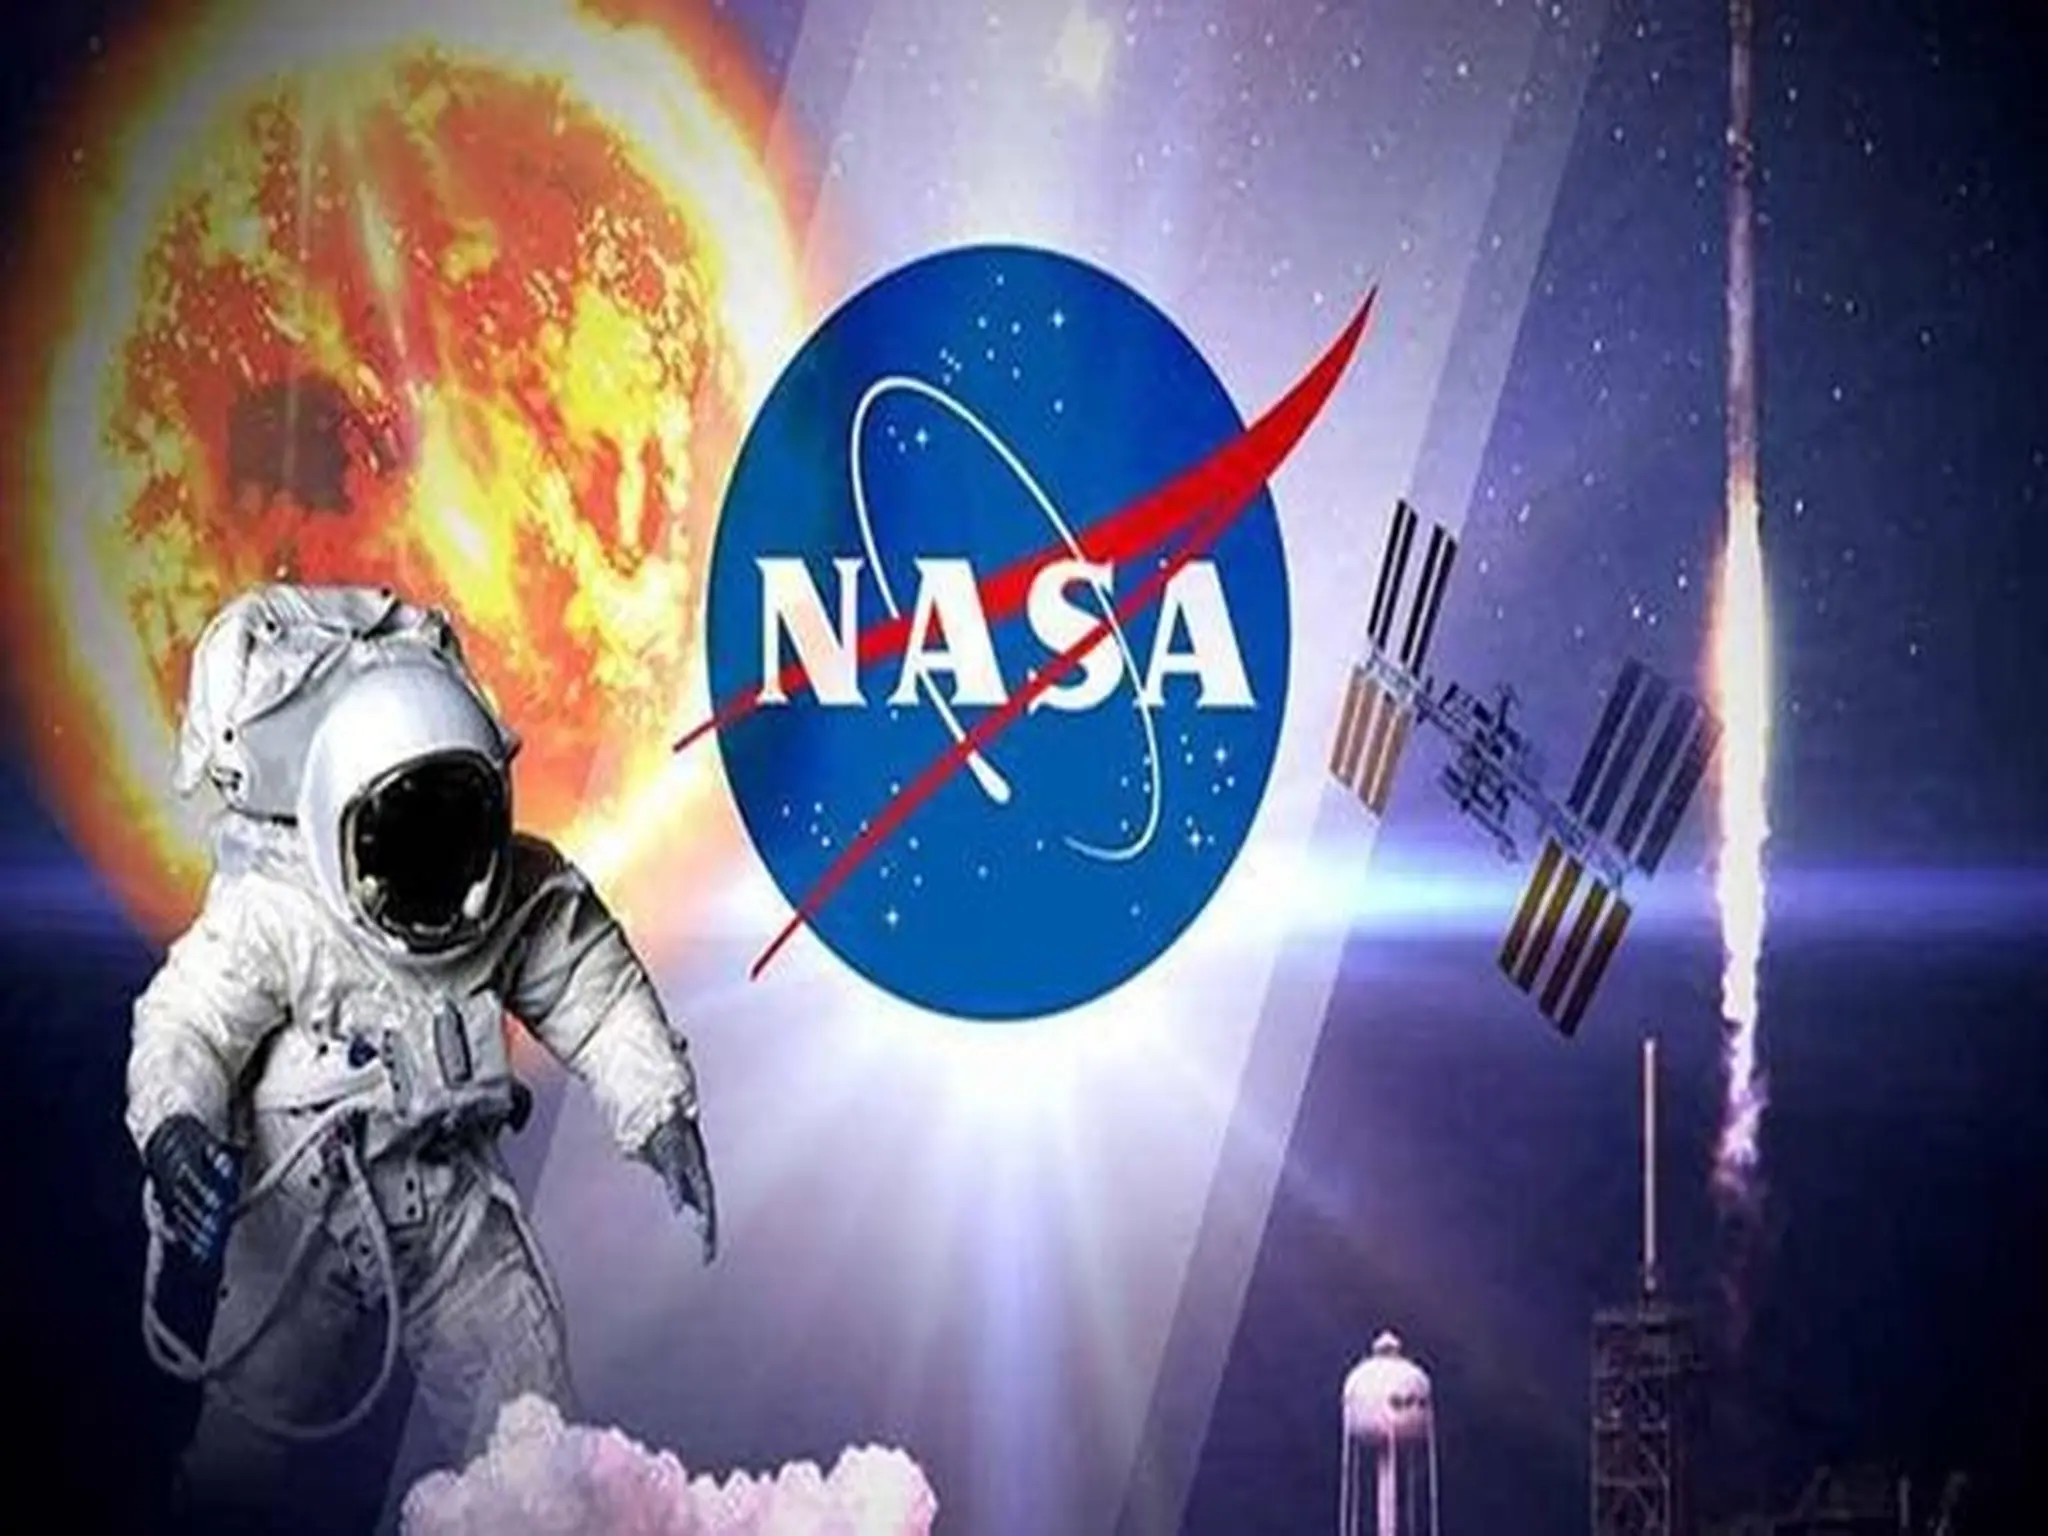 وكالة ناسا تعلن تأجيل أطلاق مهمة Crew_6 حتي أشعار آخر 